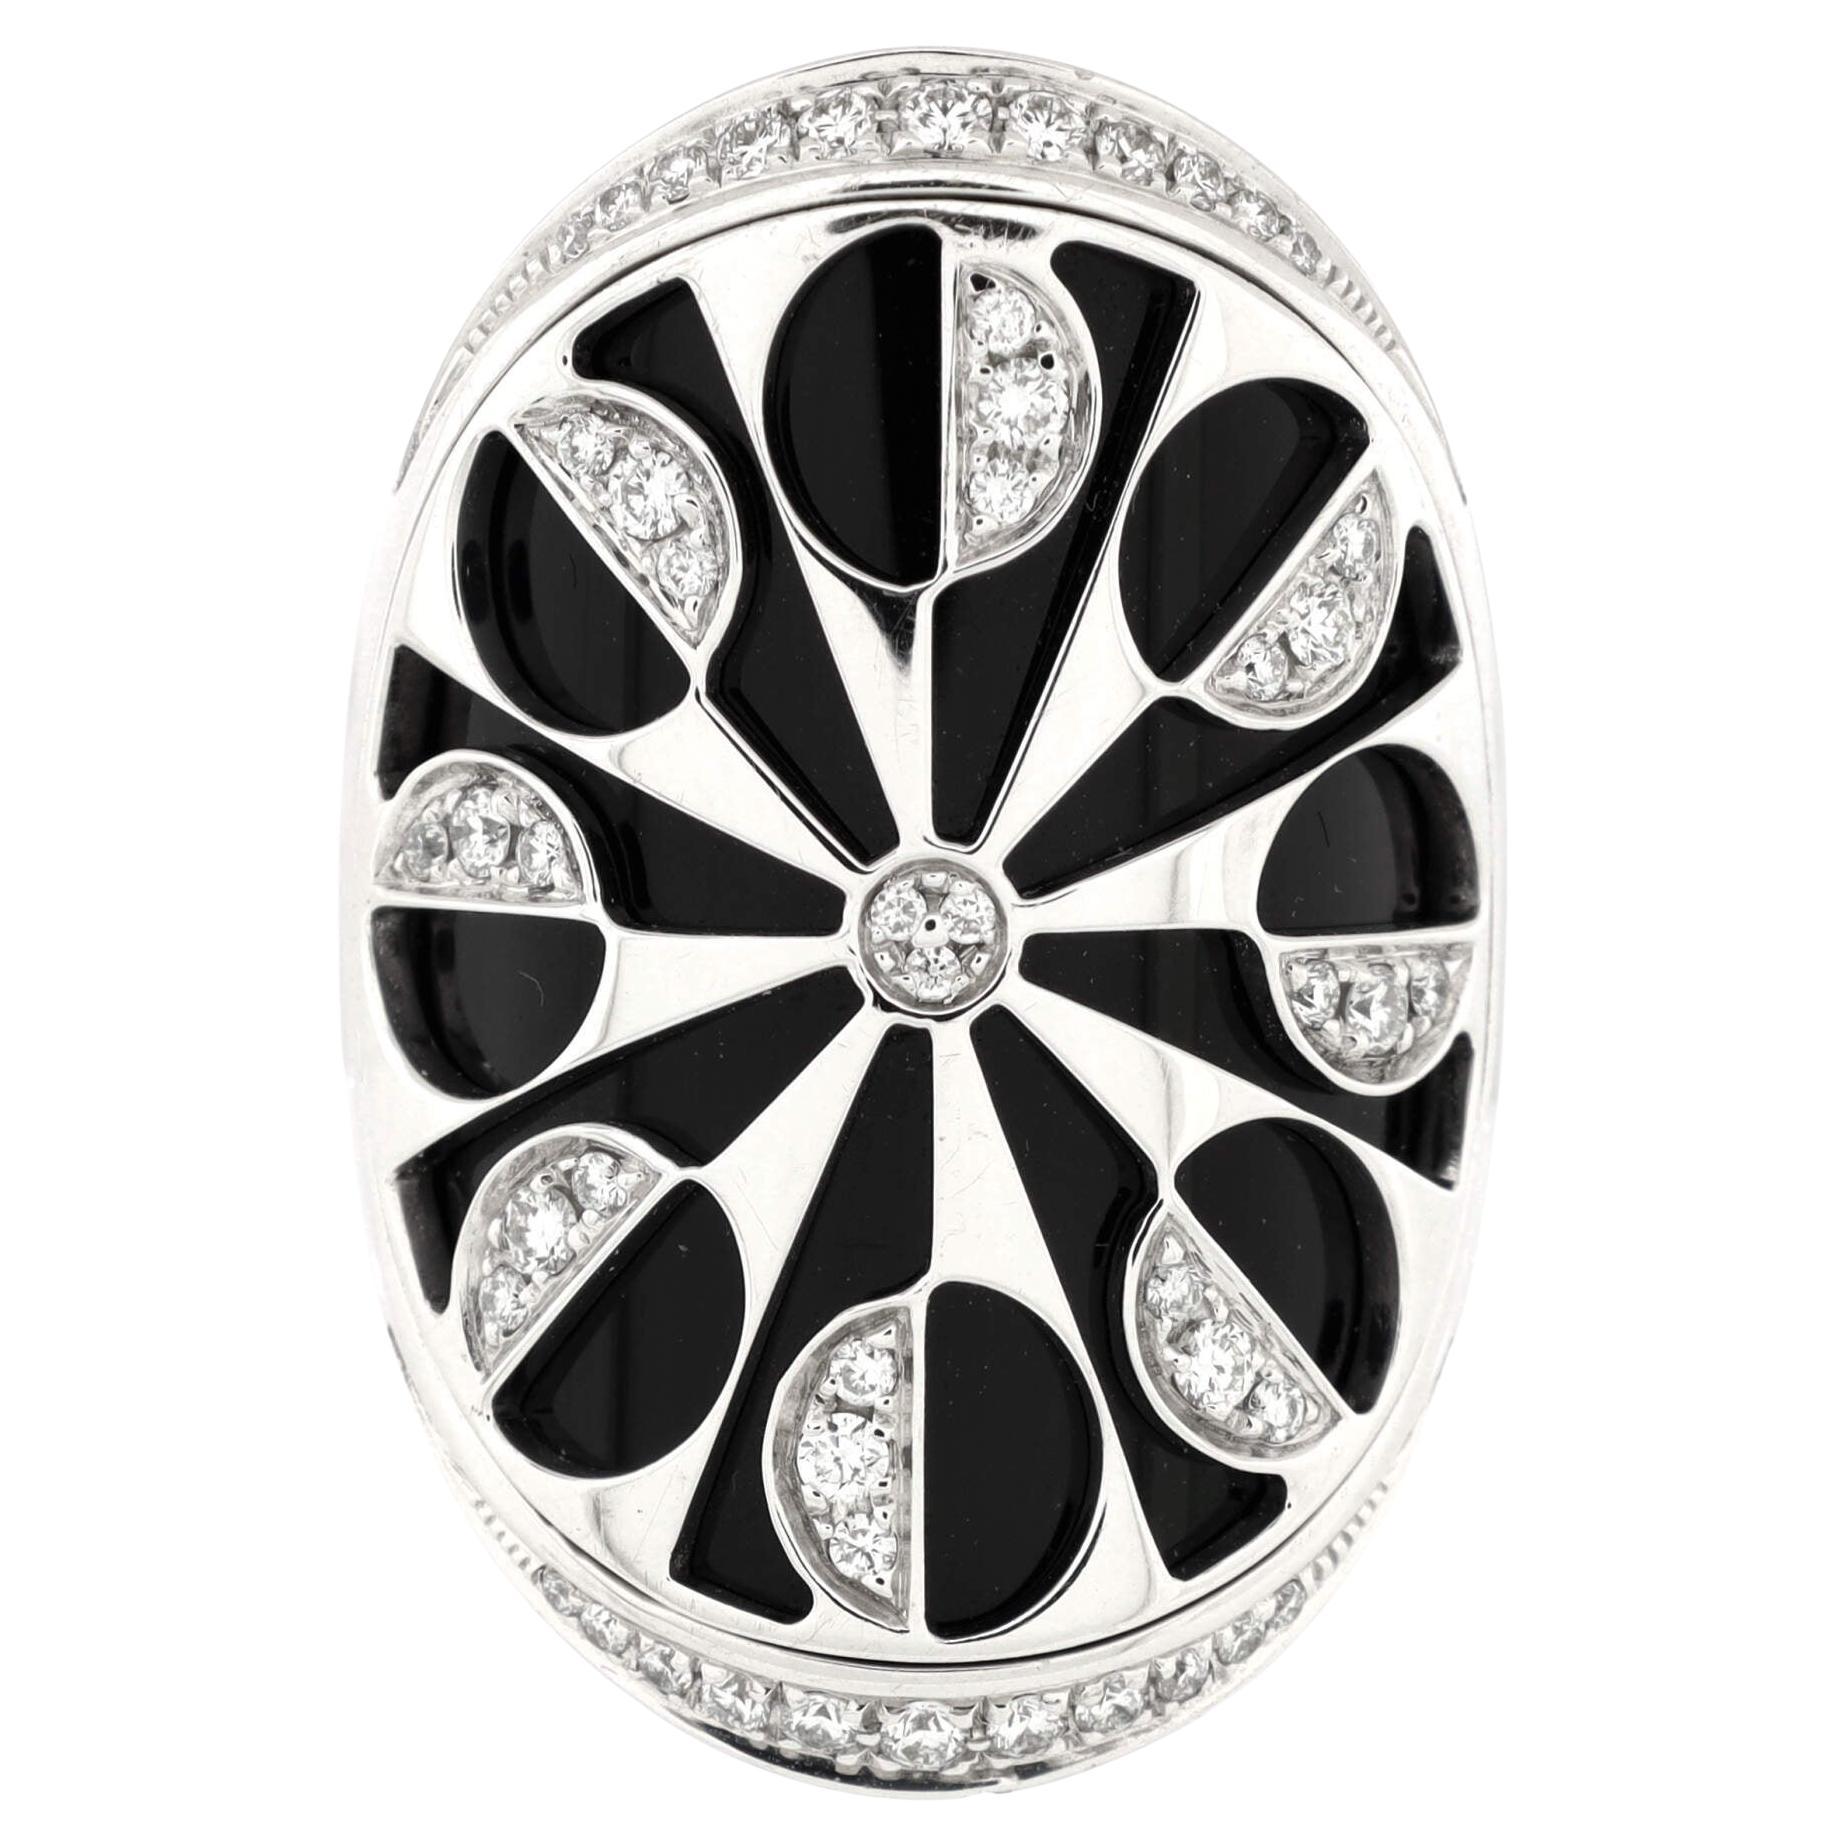 Bvlgari Intarsio Ring 18K White Gold with Onyx and Diamonds